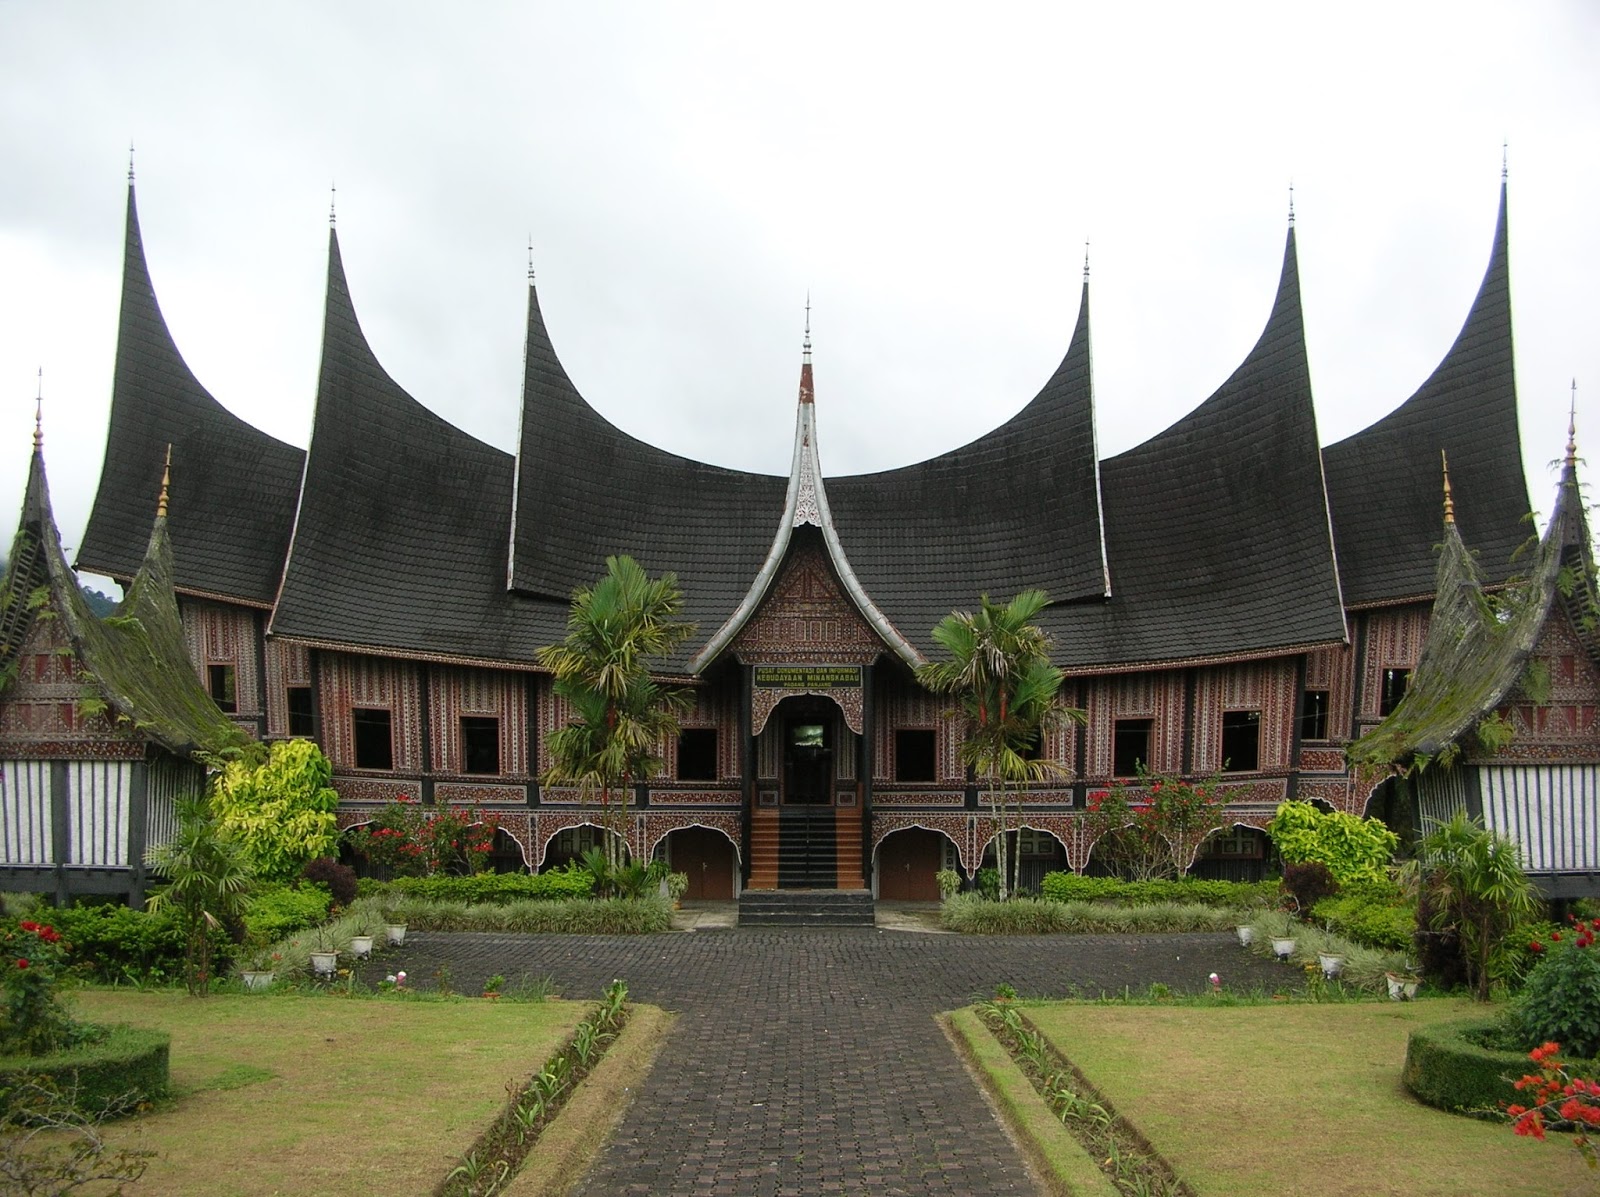 Download this Rumah Melayu Selaso Jatuh Kembar Adat Kepulauan Riau picture